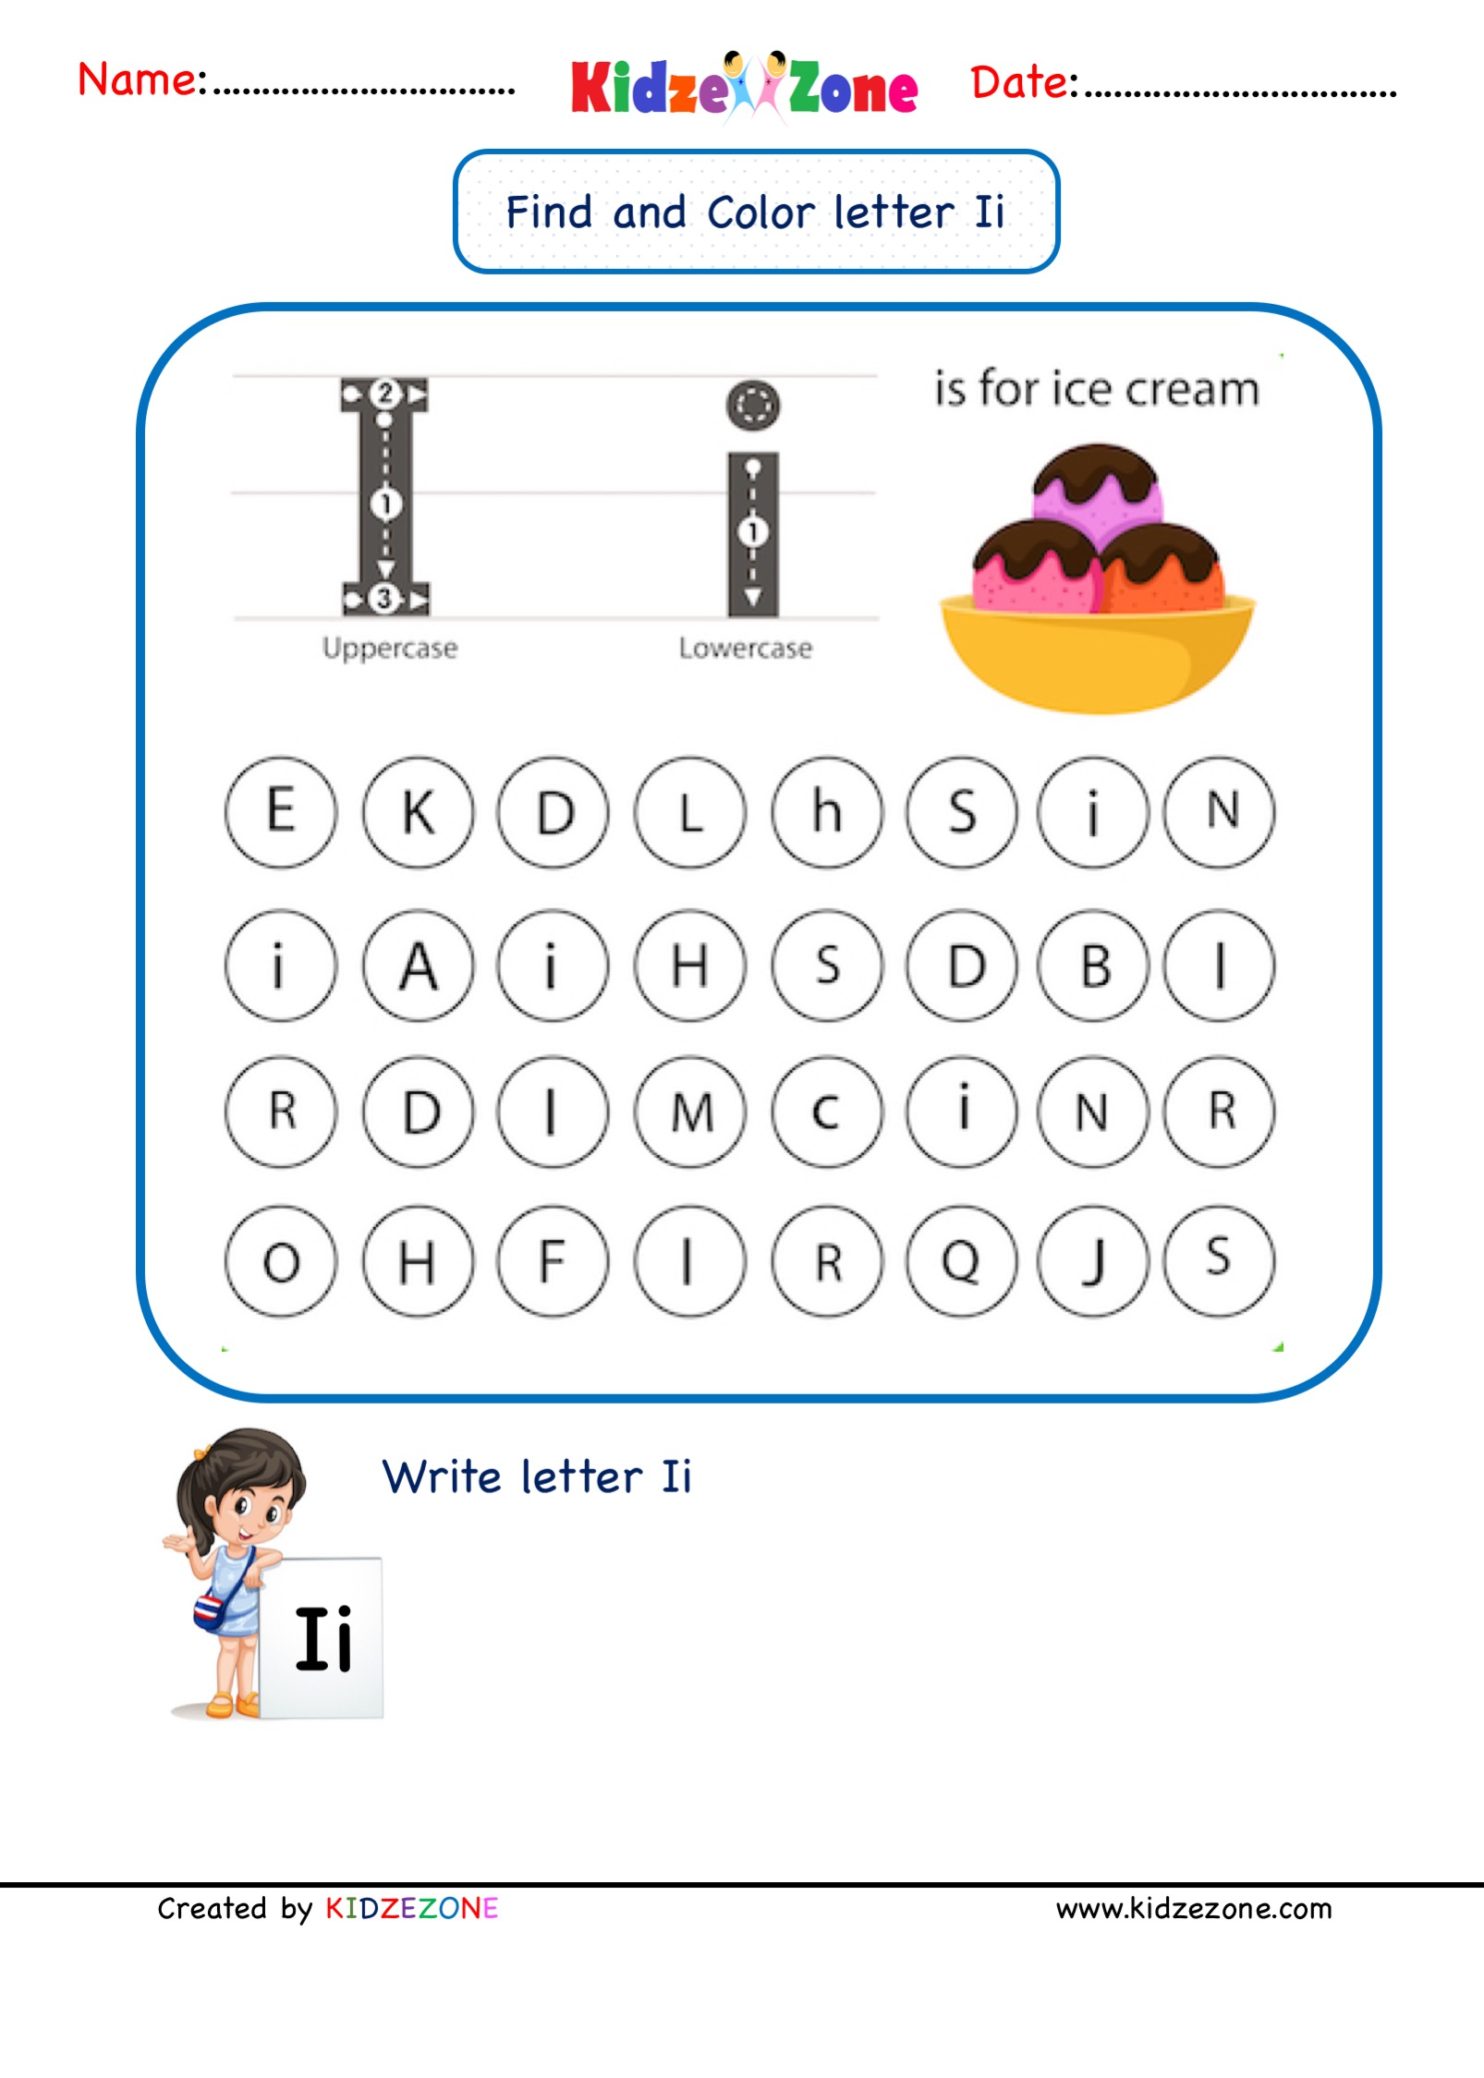 kindergarten-letter-i-worksheets-find-and-color-kidzezone